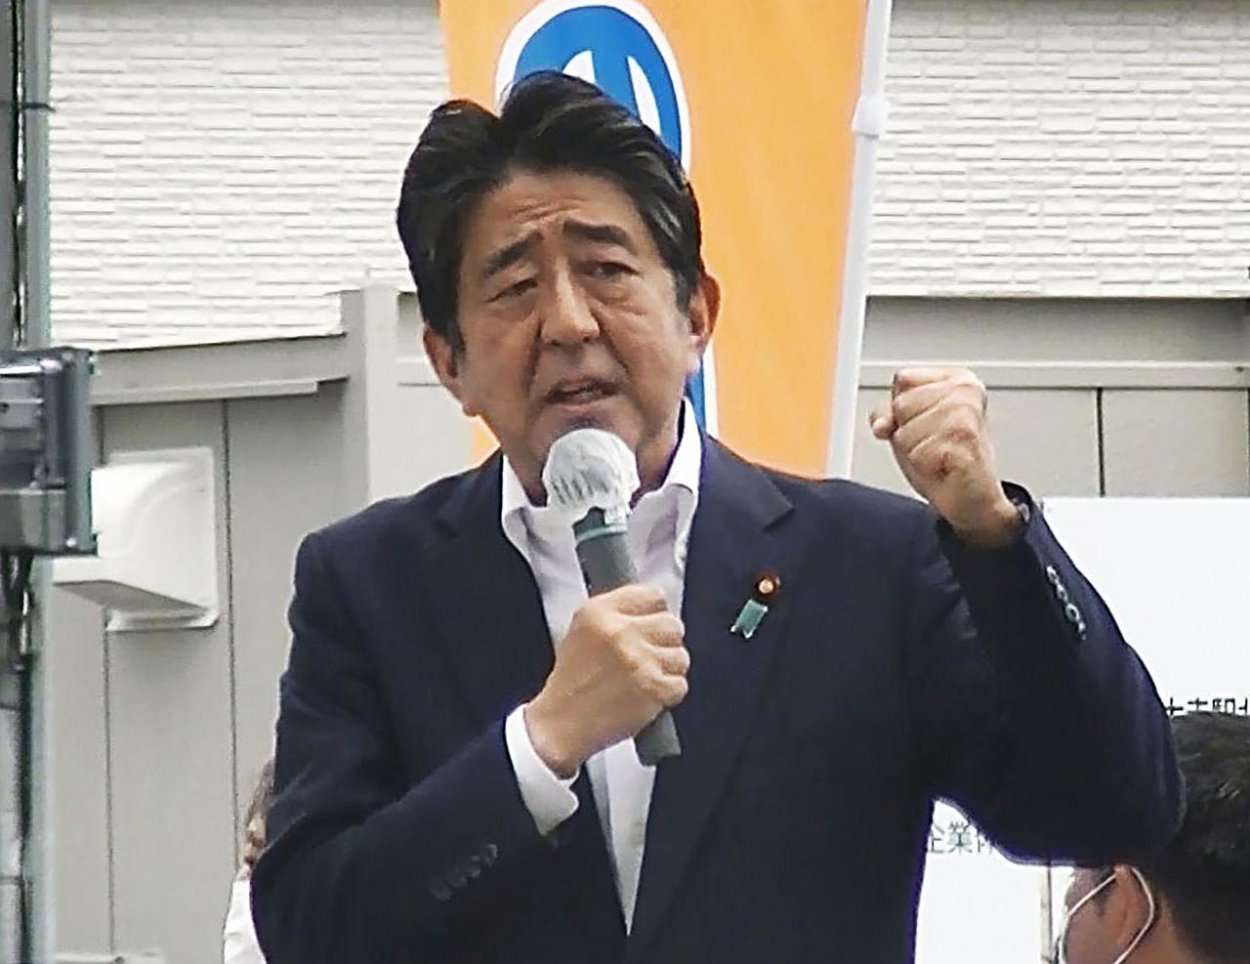 Japonského expremiéra Abeho postrelili do hrudníka a krku; je vo veľmi vážnom stave